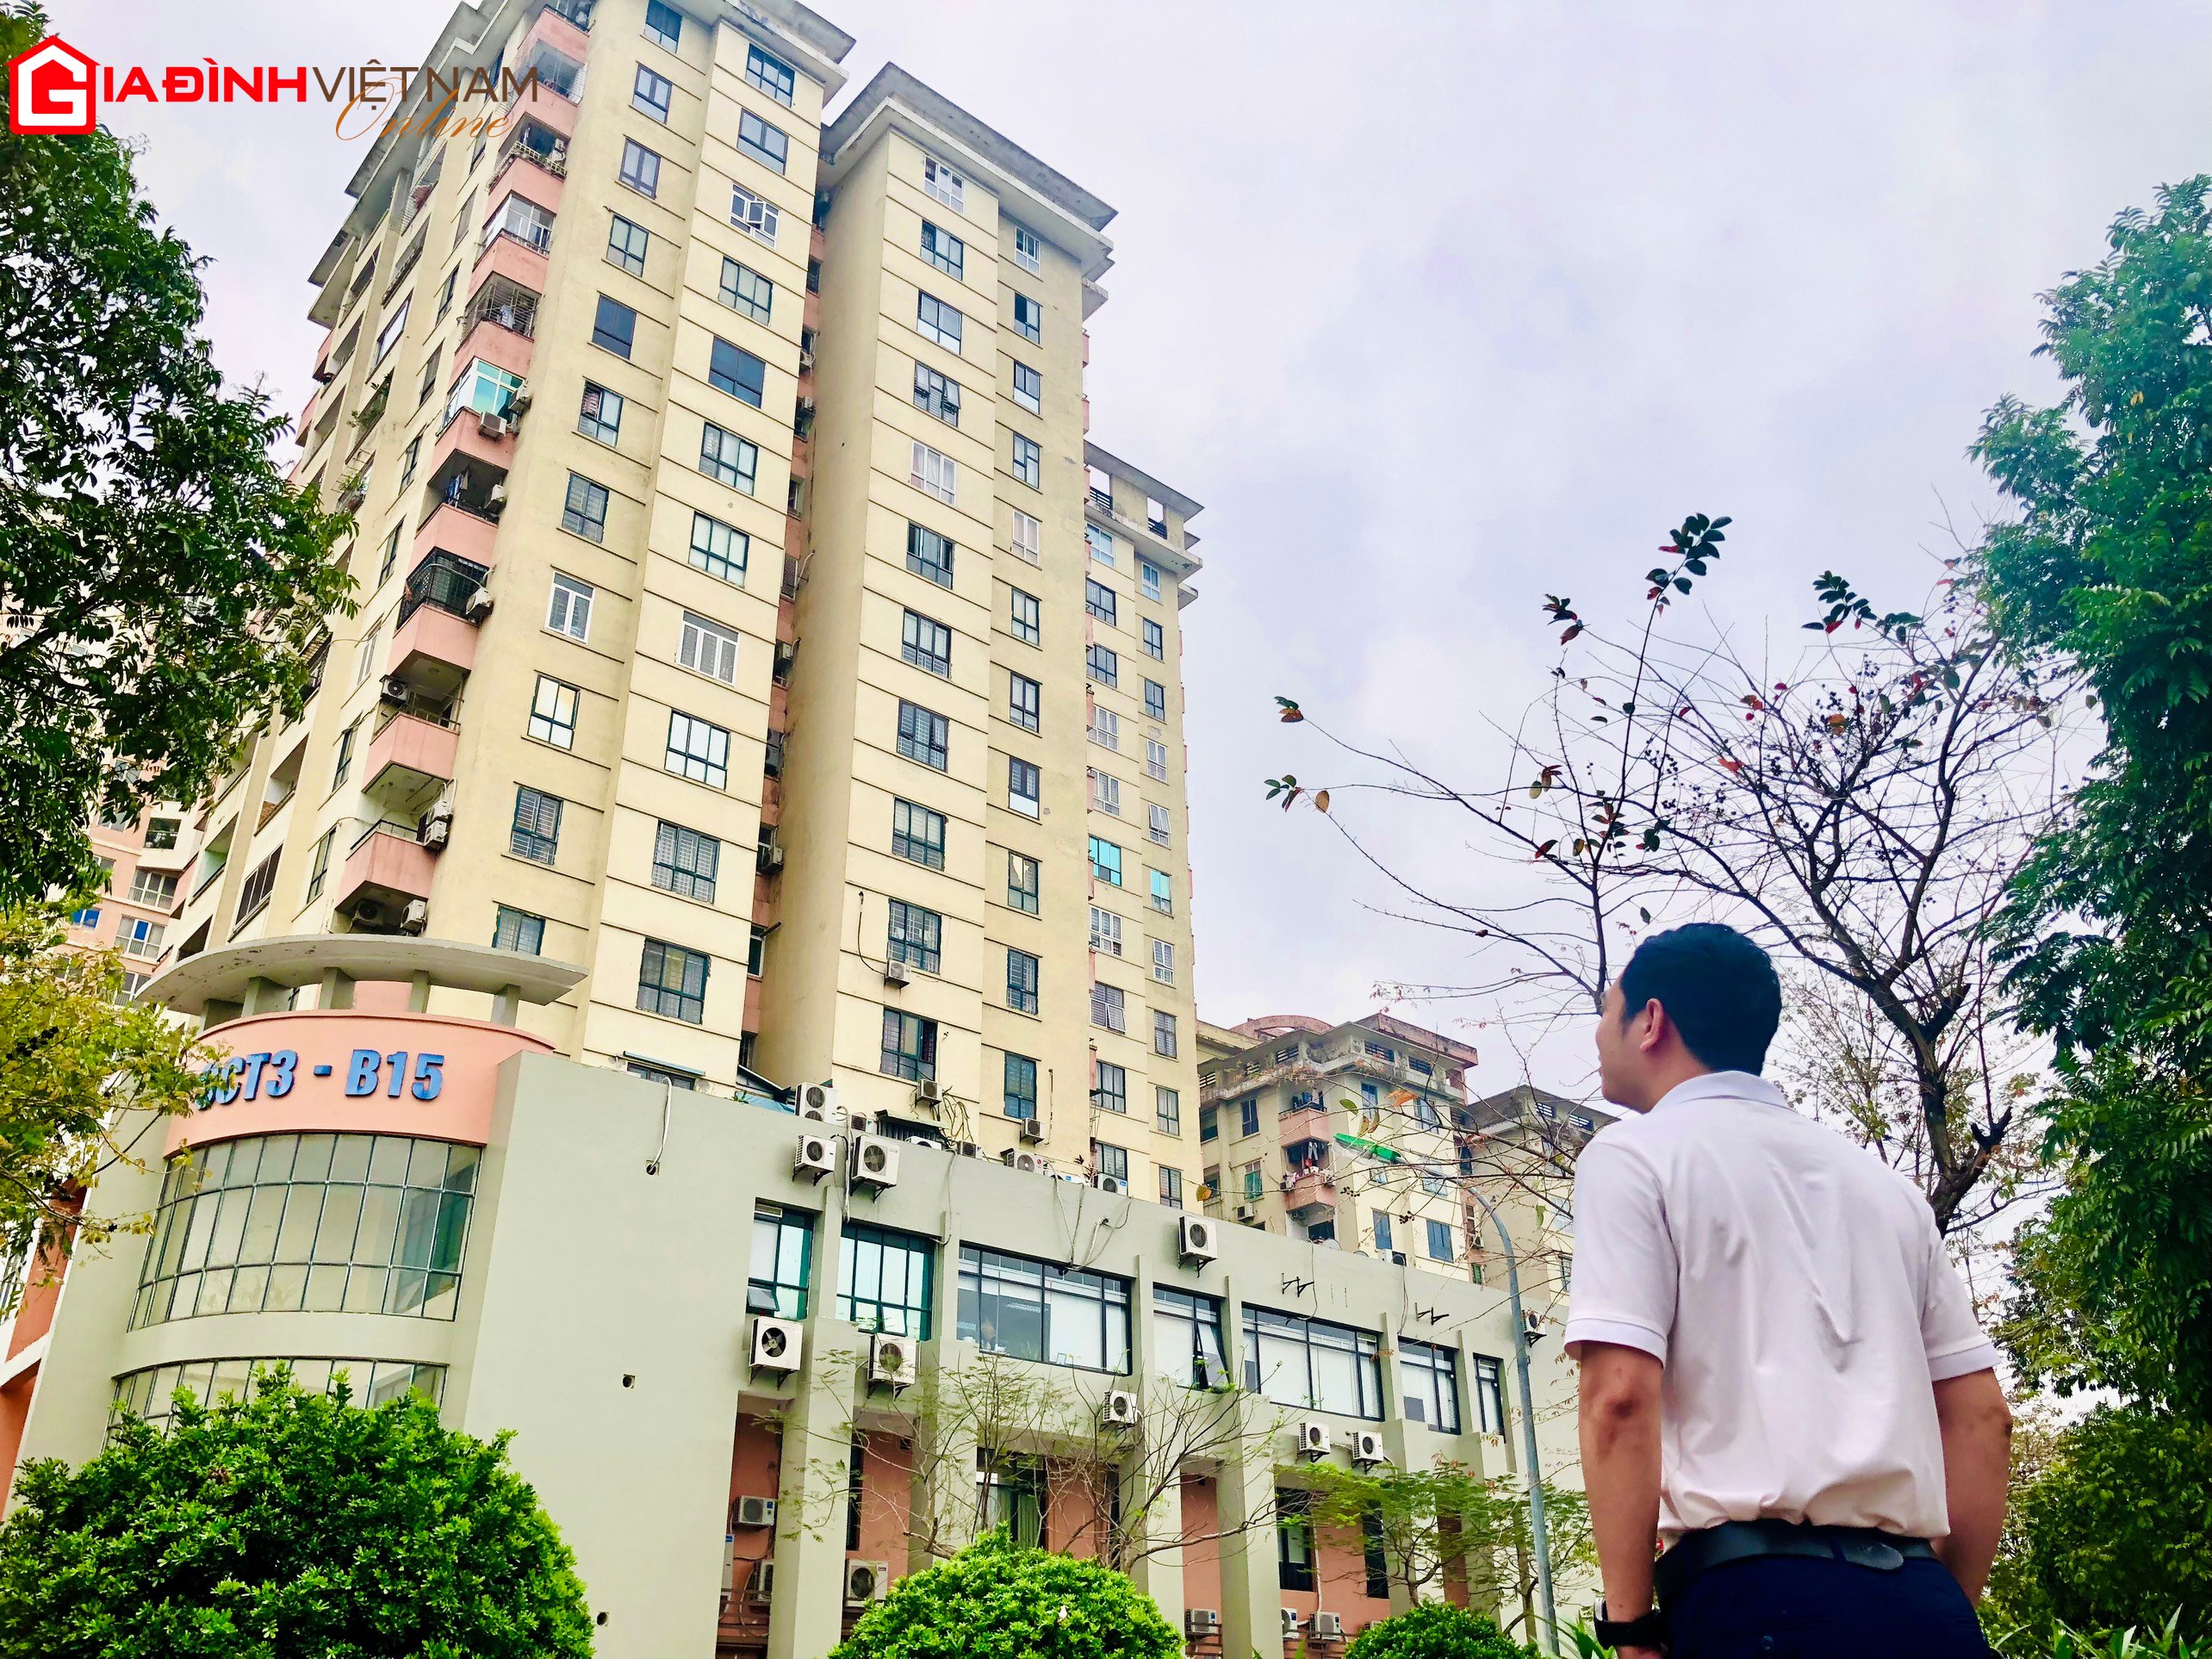  Giá chung cư trên thị trường Hà Nội tăng mạnh thời gian qua khiến nhiều người ngậm ngùi, đành phải từ bỏ ước mơ mua nhà (Ảnh: Thúy Ngà)